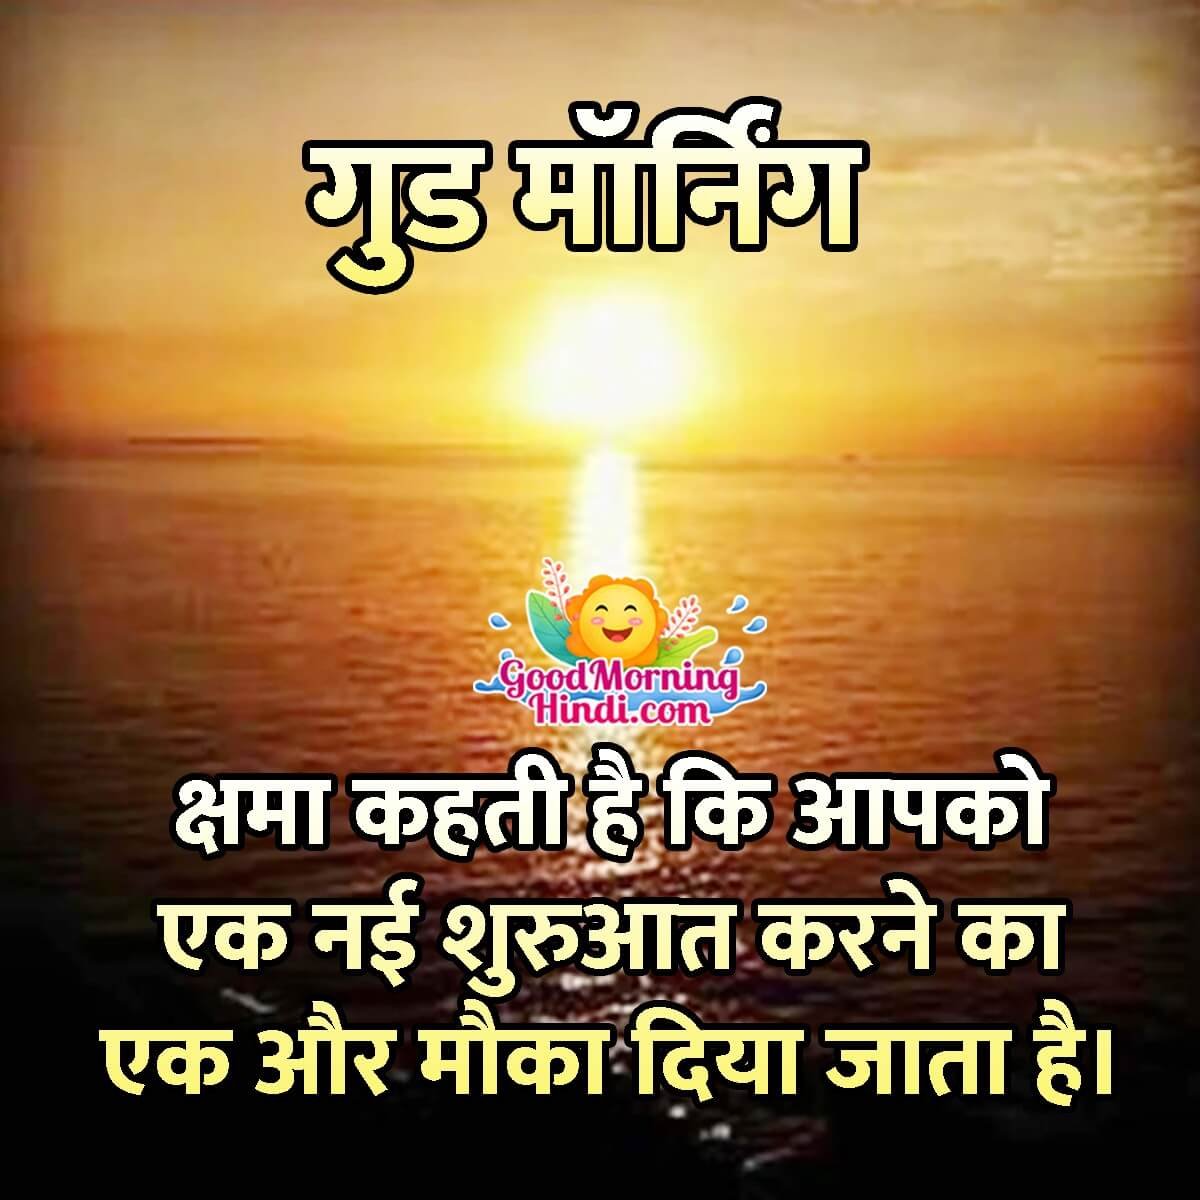 Good Morning Hindi Quote Image